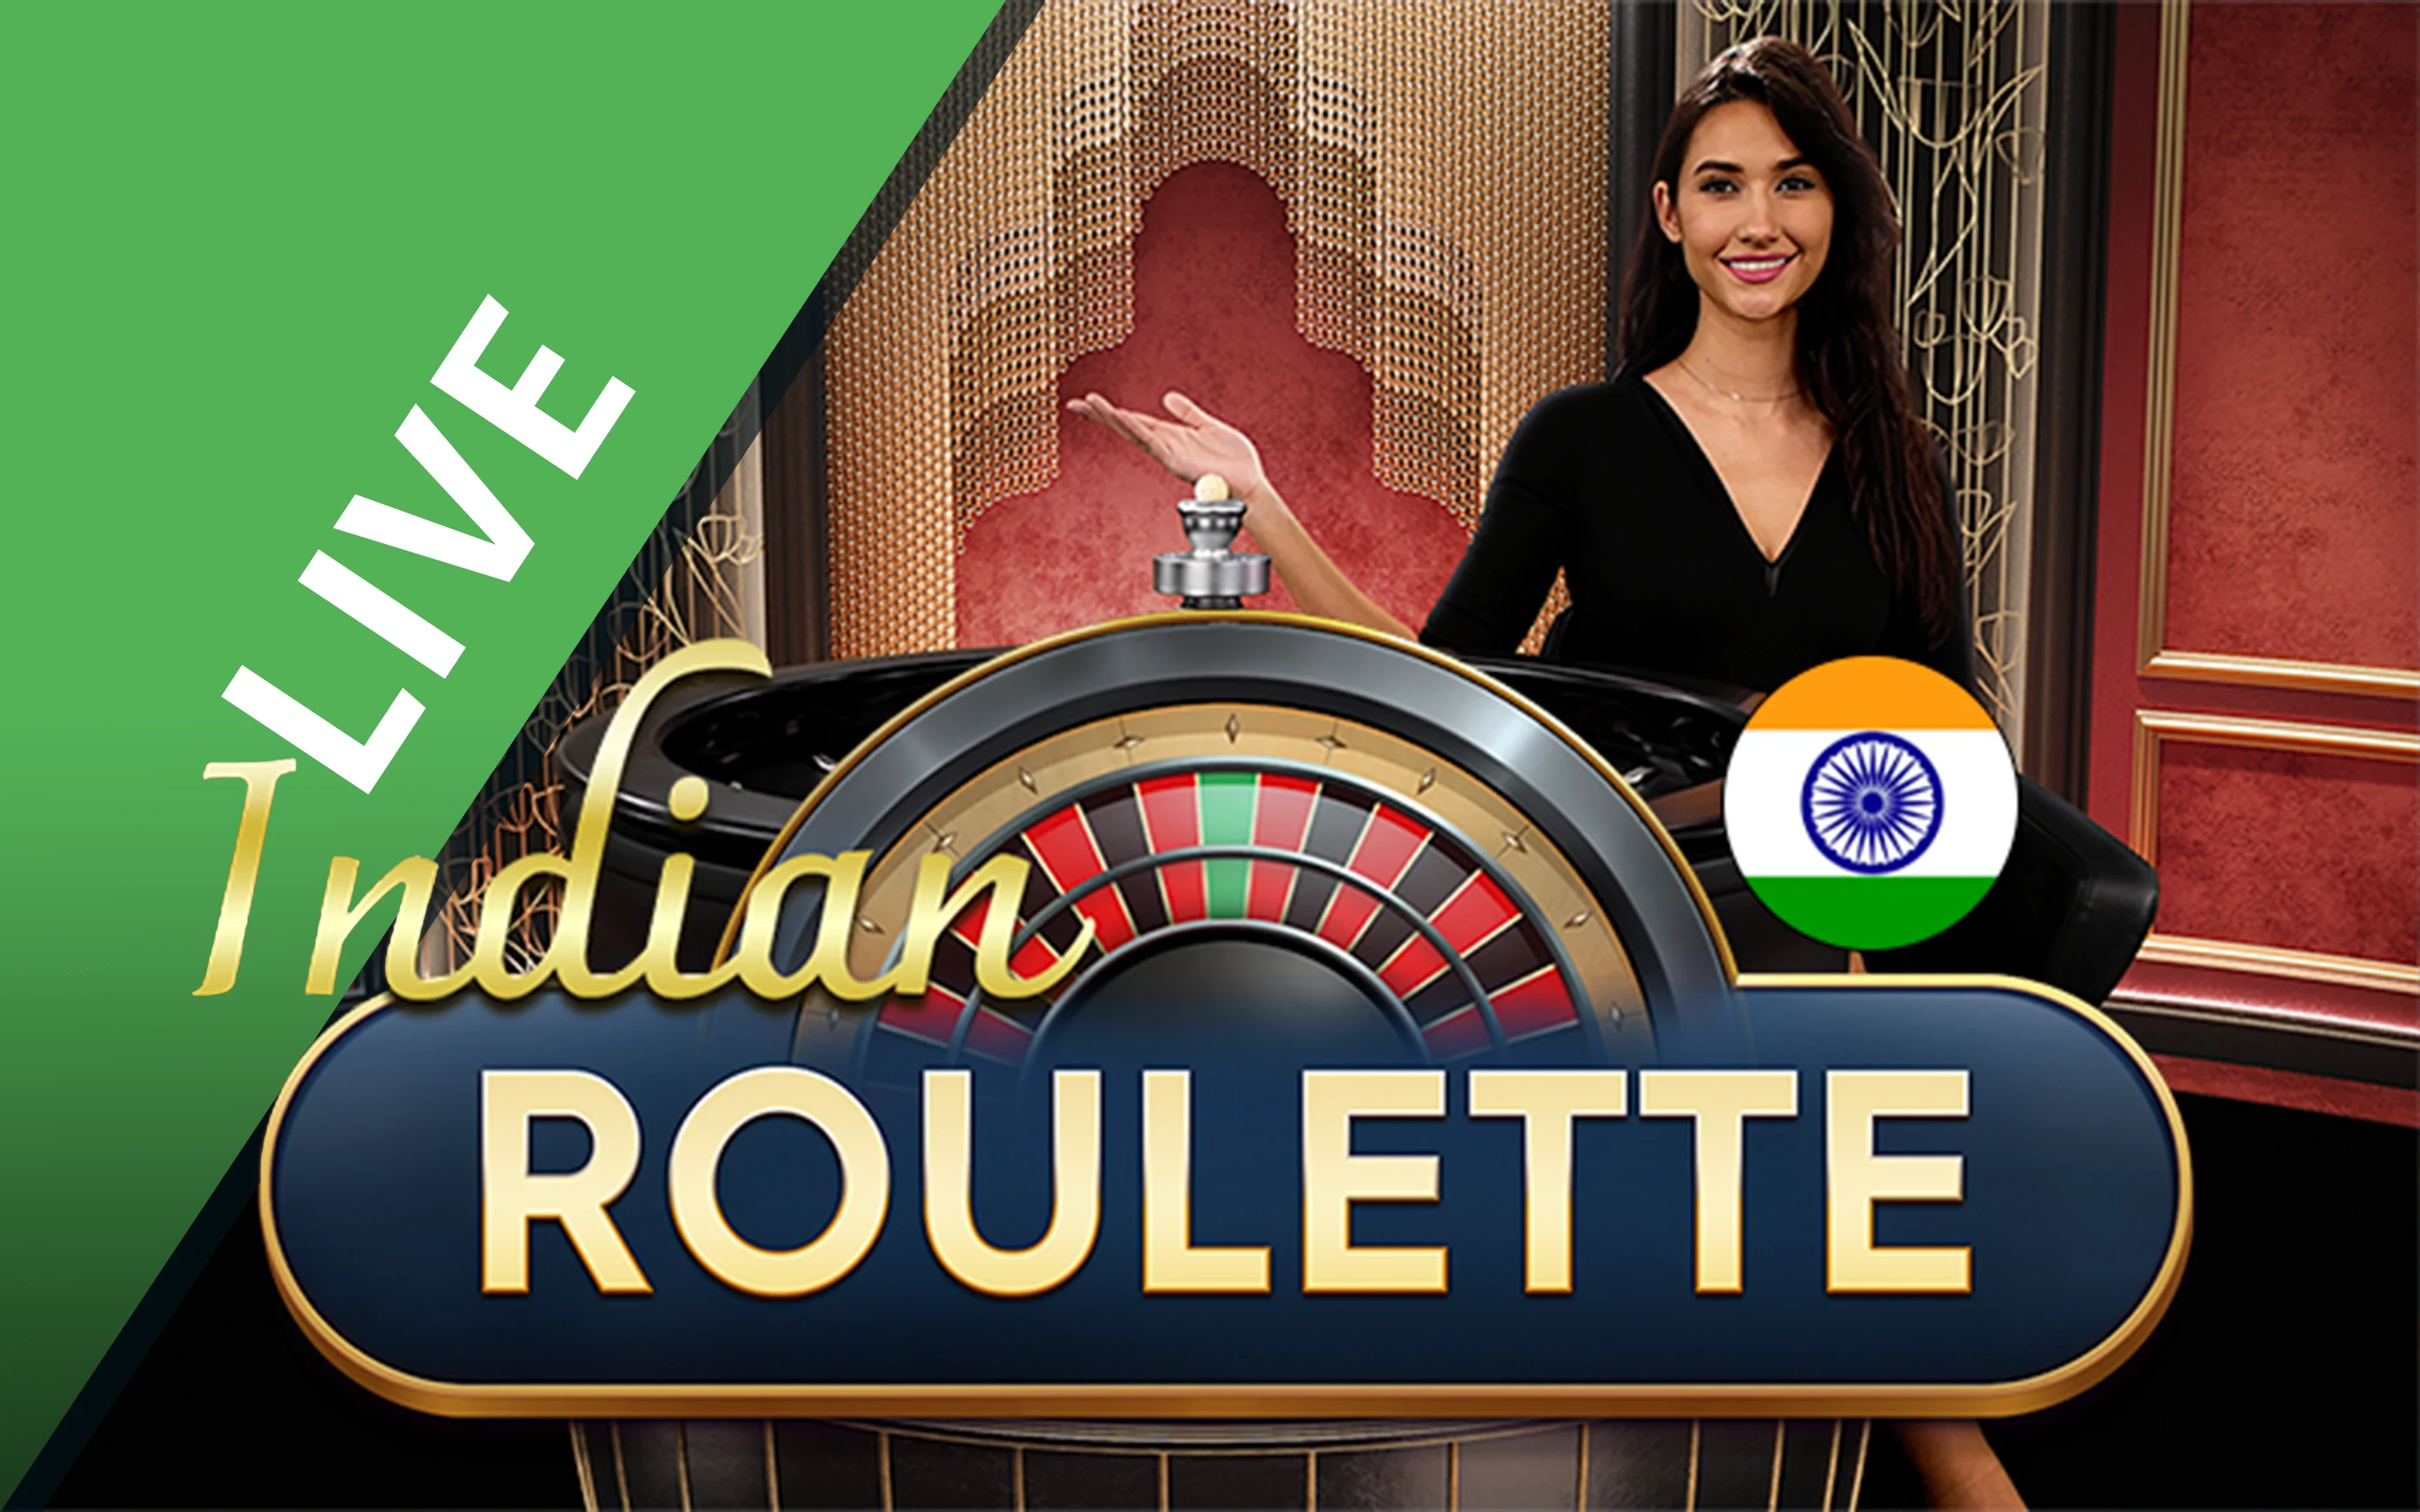 Gioca a Roulette Indian sul casino online Starcasino.be